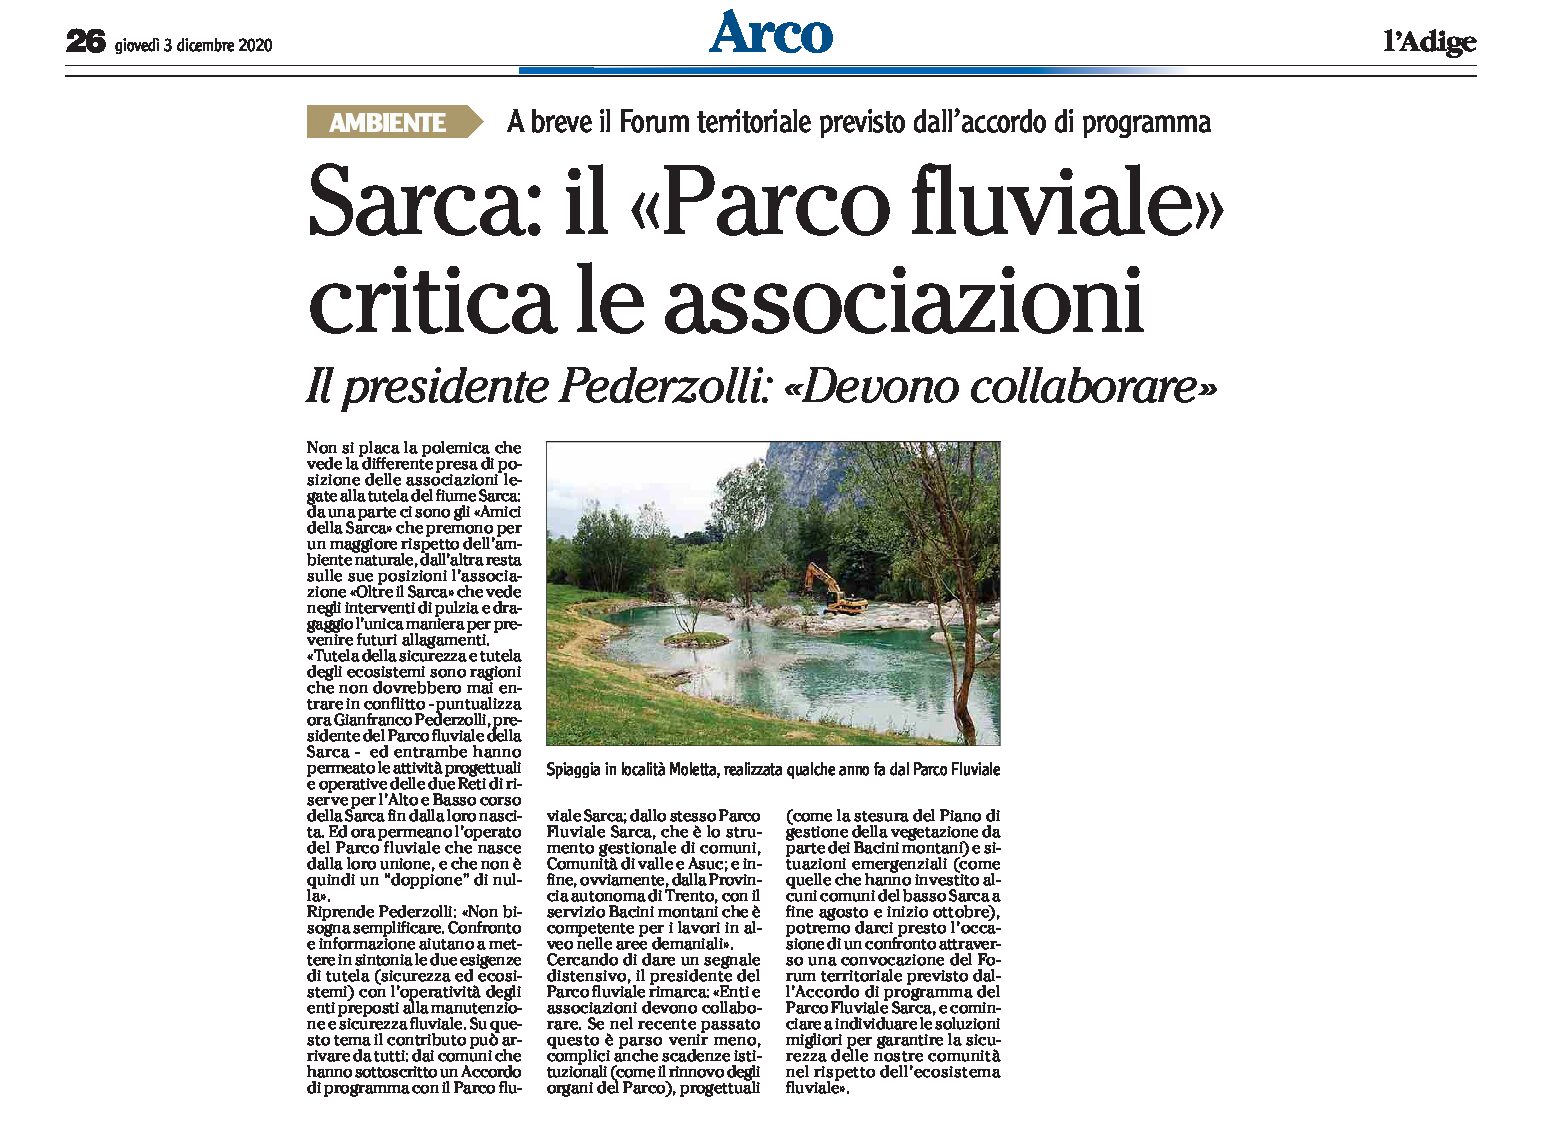 Sarca: il “Parco fluviale” critica le associazioni. Il presidente Pederzolli “devono collaborare”